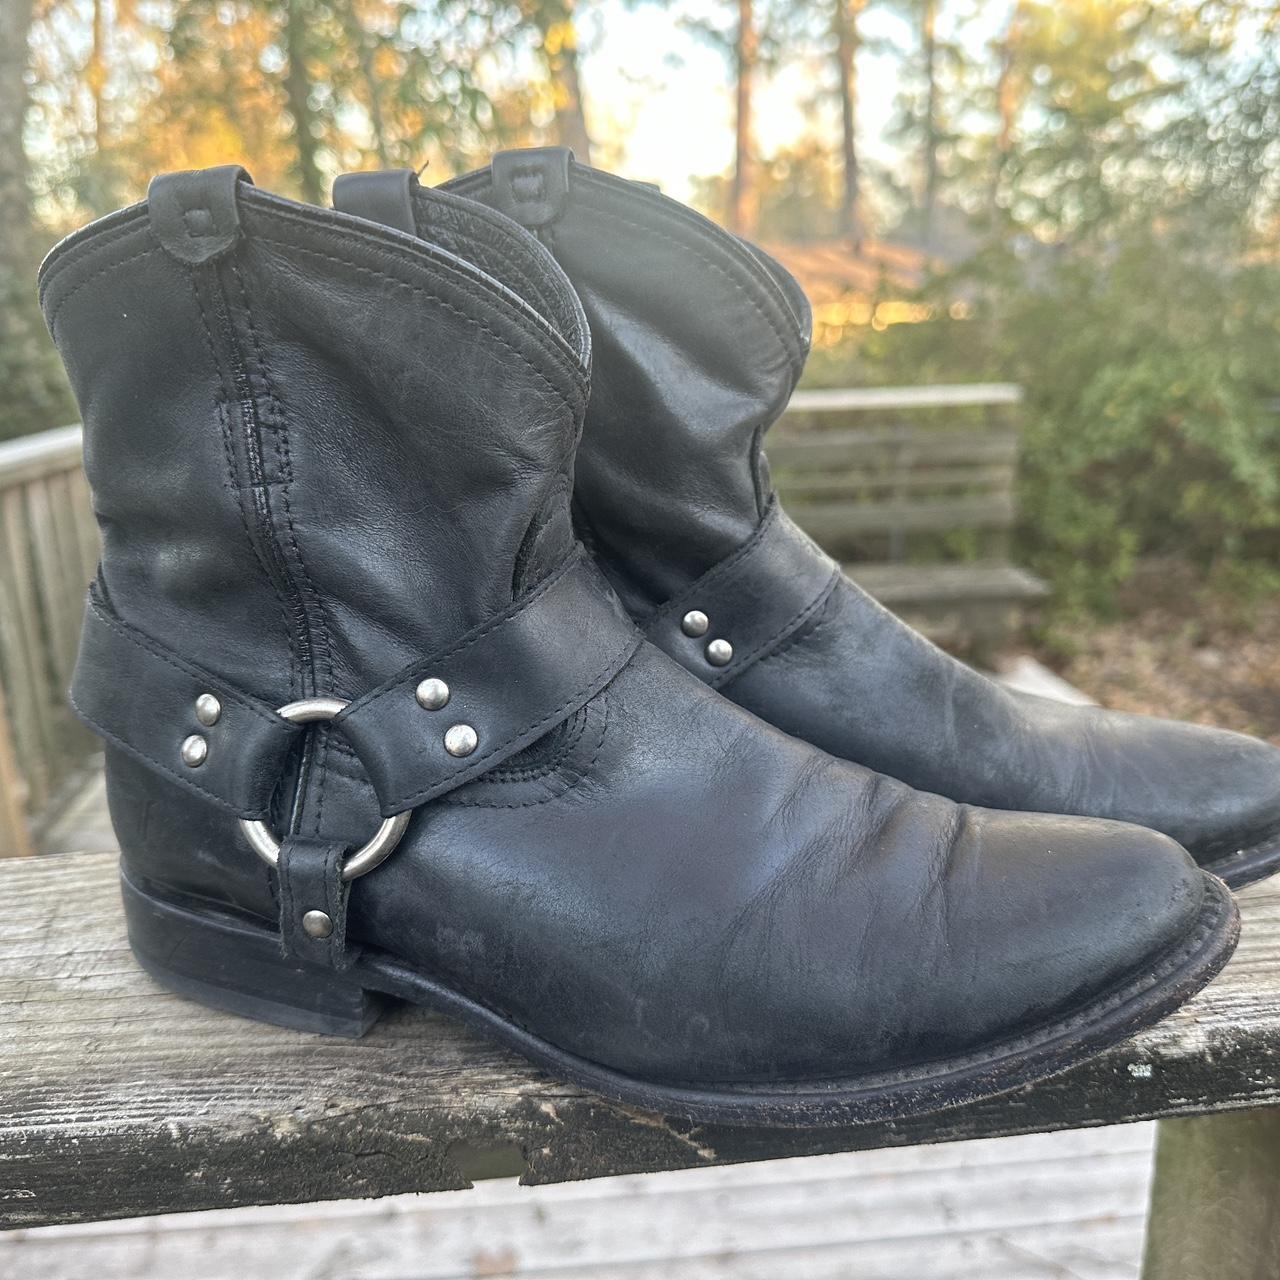 Frye harness ankle boot Black leather size women’s... - Depop